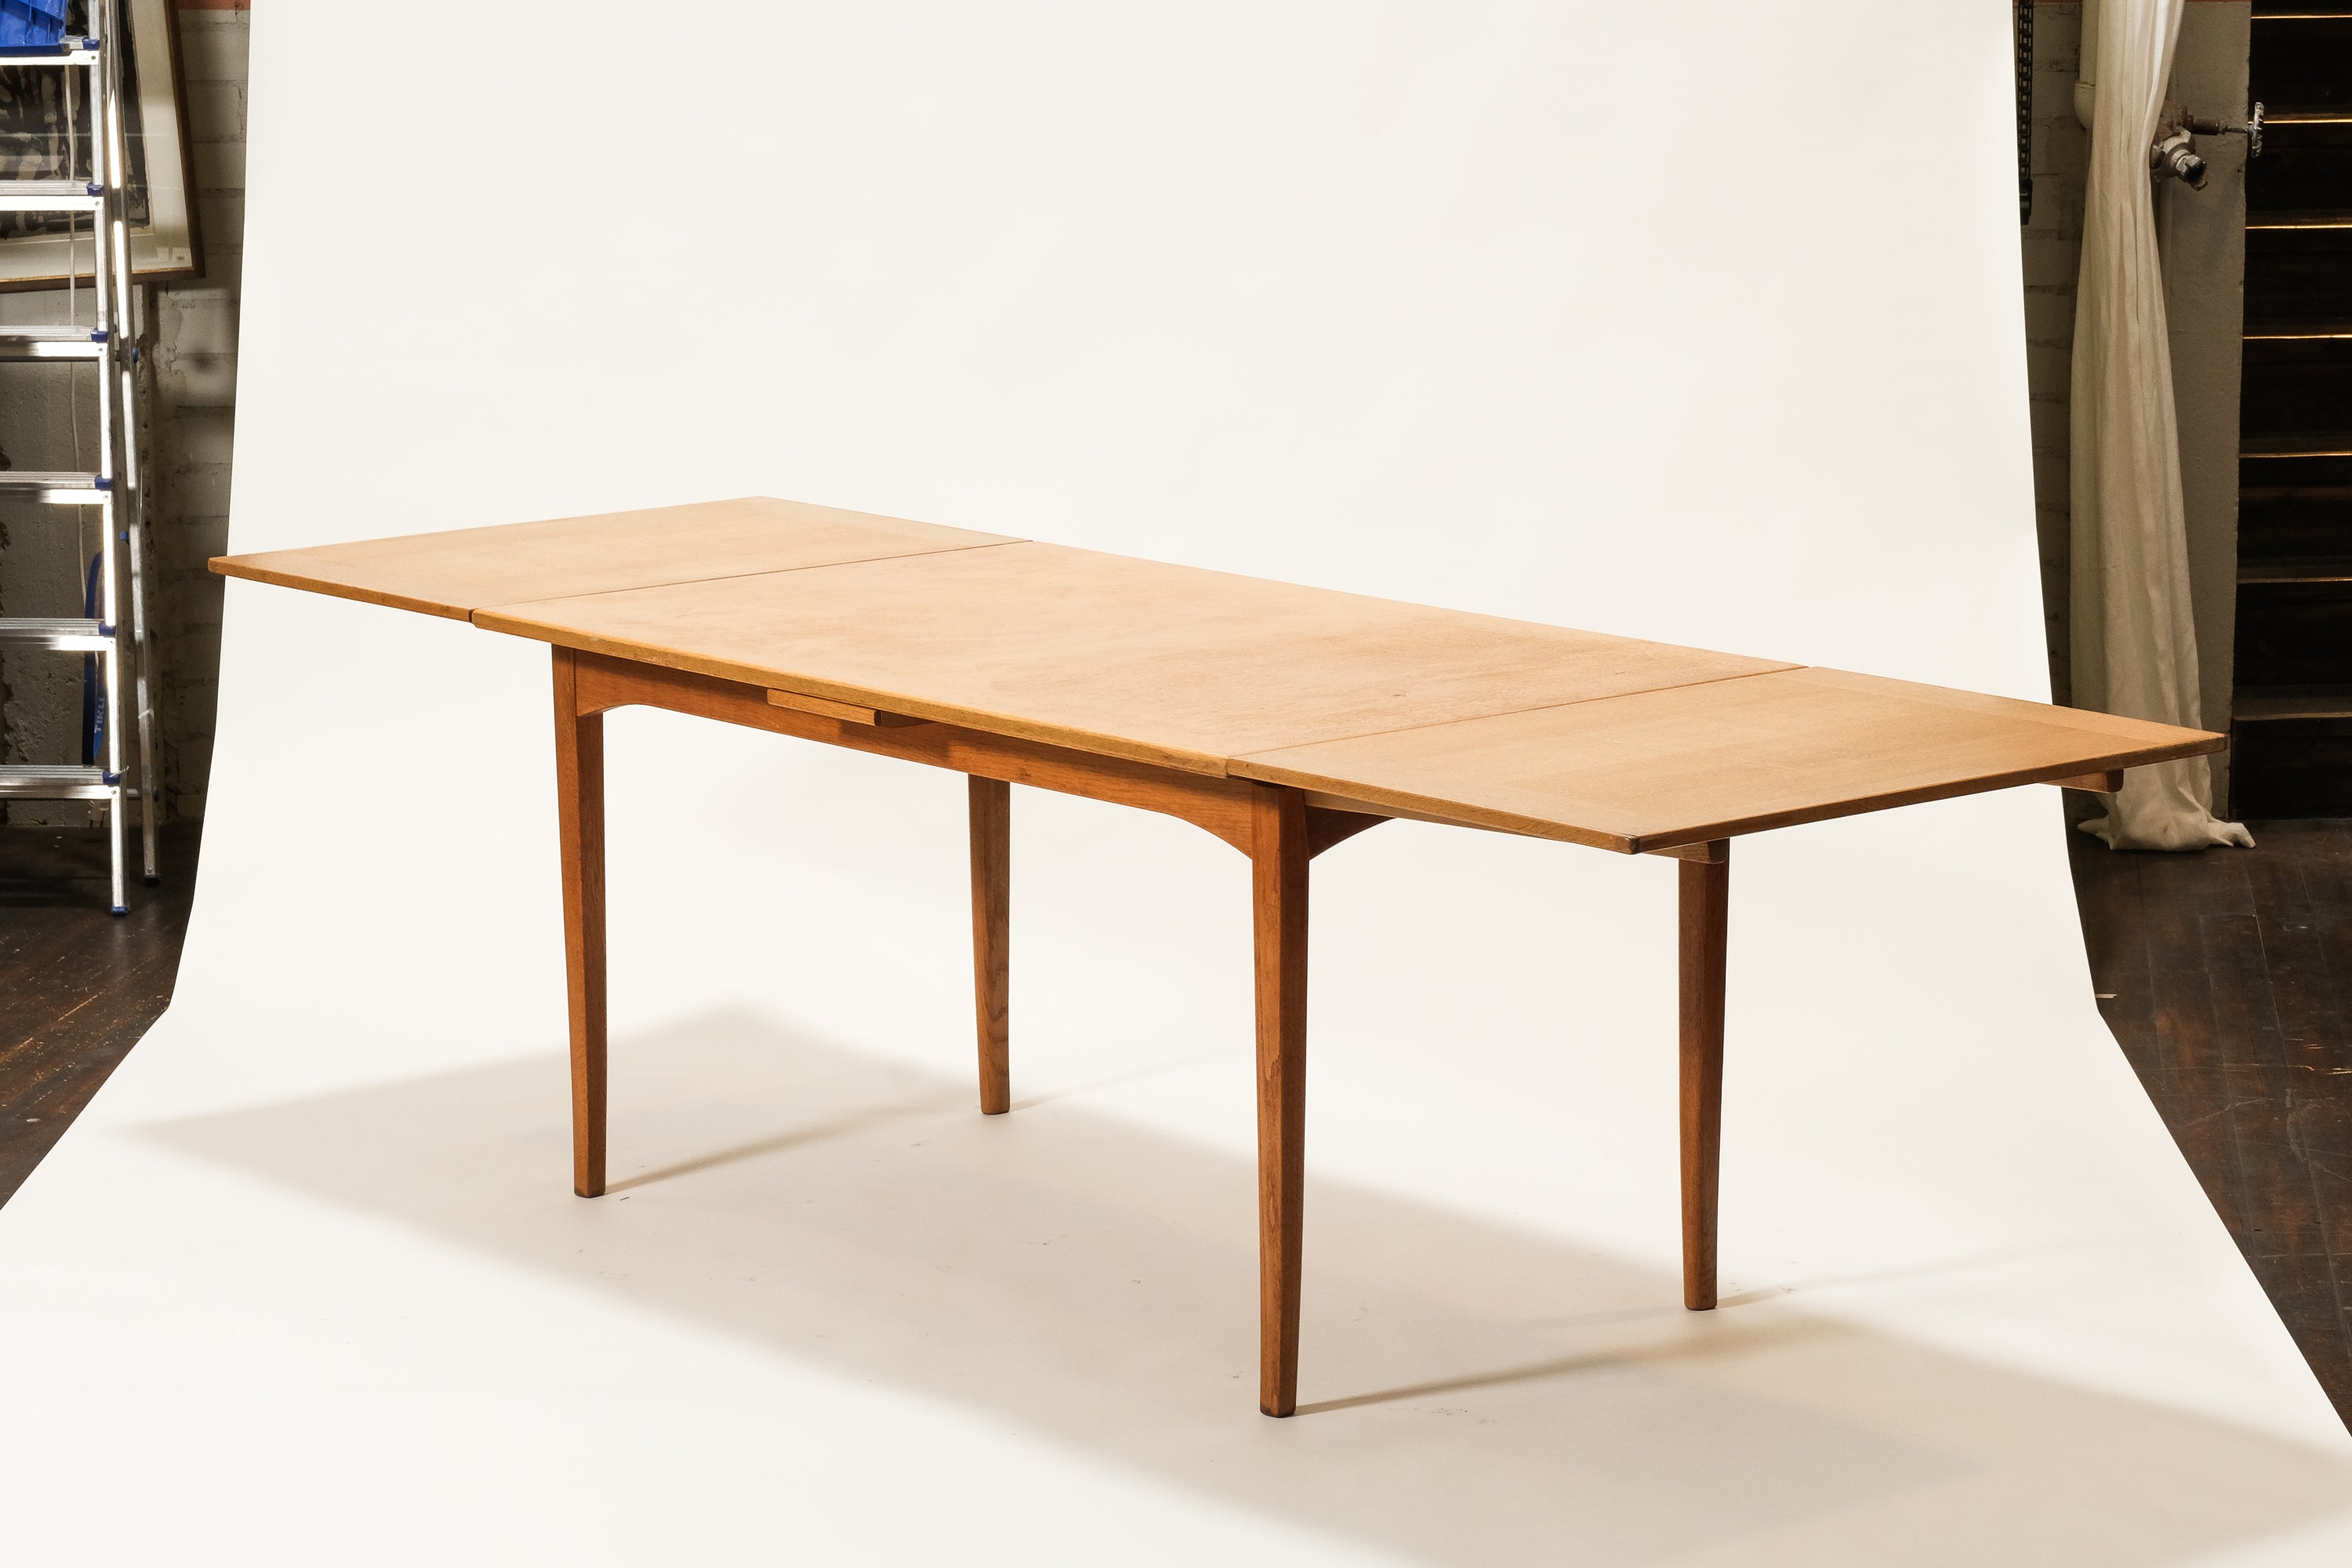 Oak Dining Table Model "Gustavus" by Carl Malmsten, Sweden, 1960s